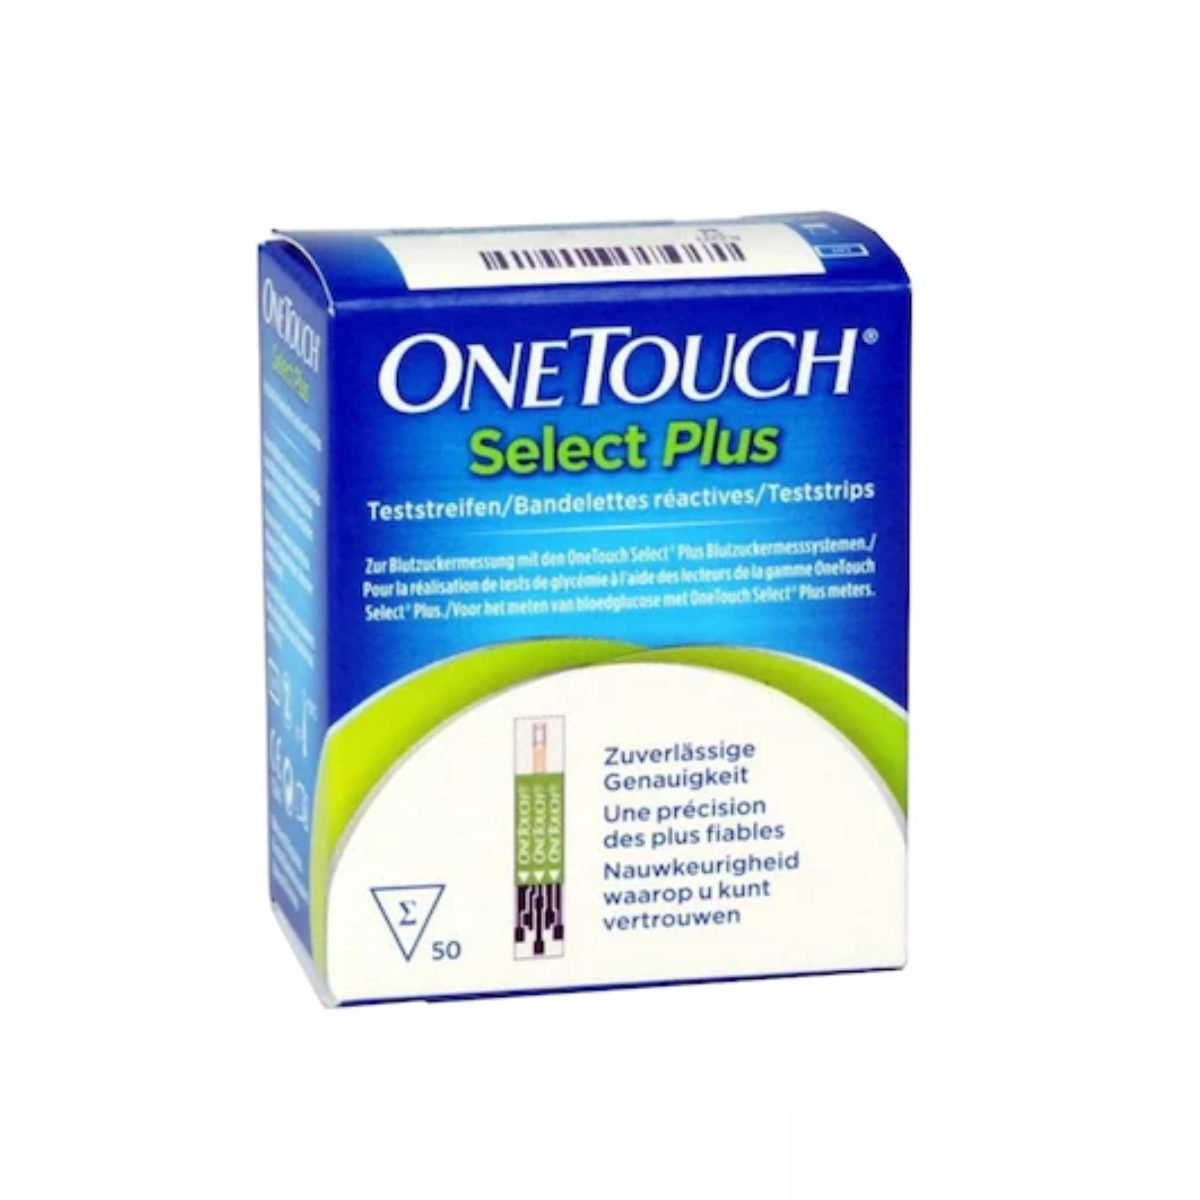 One Touch Select Plus Teste automonitorizare glicemie x 50 buc